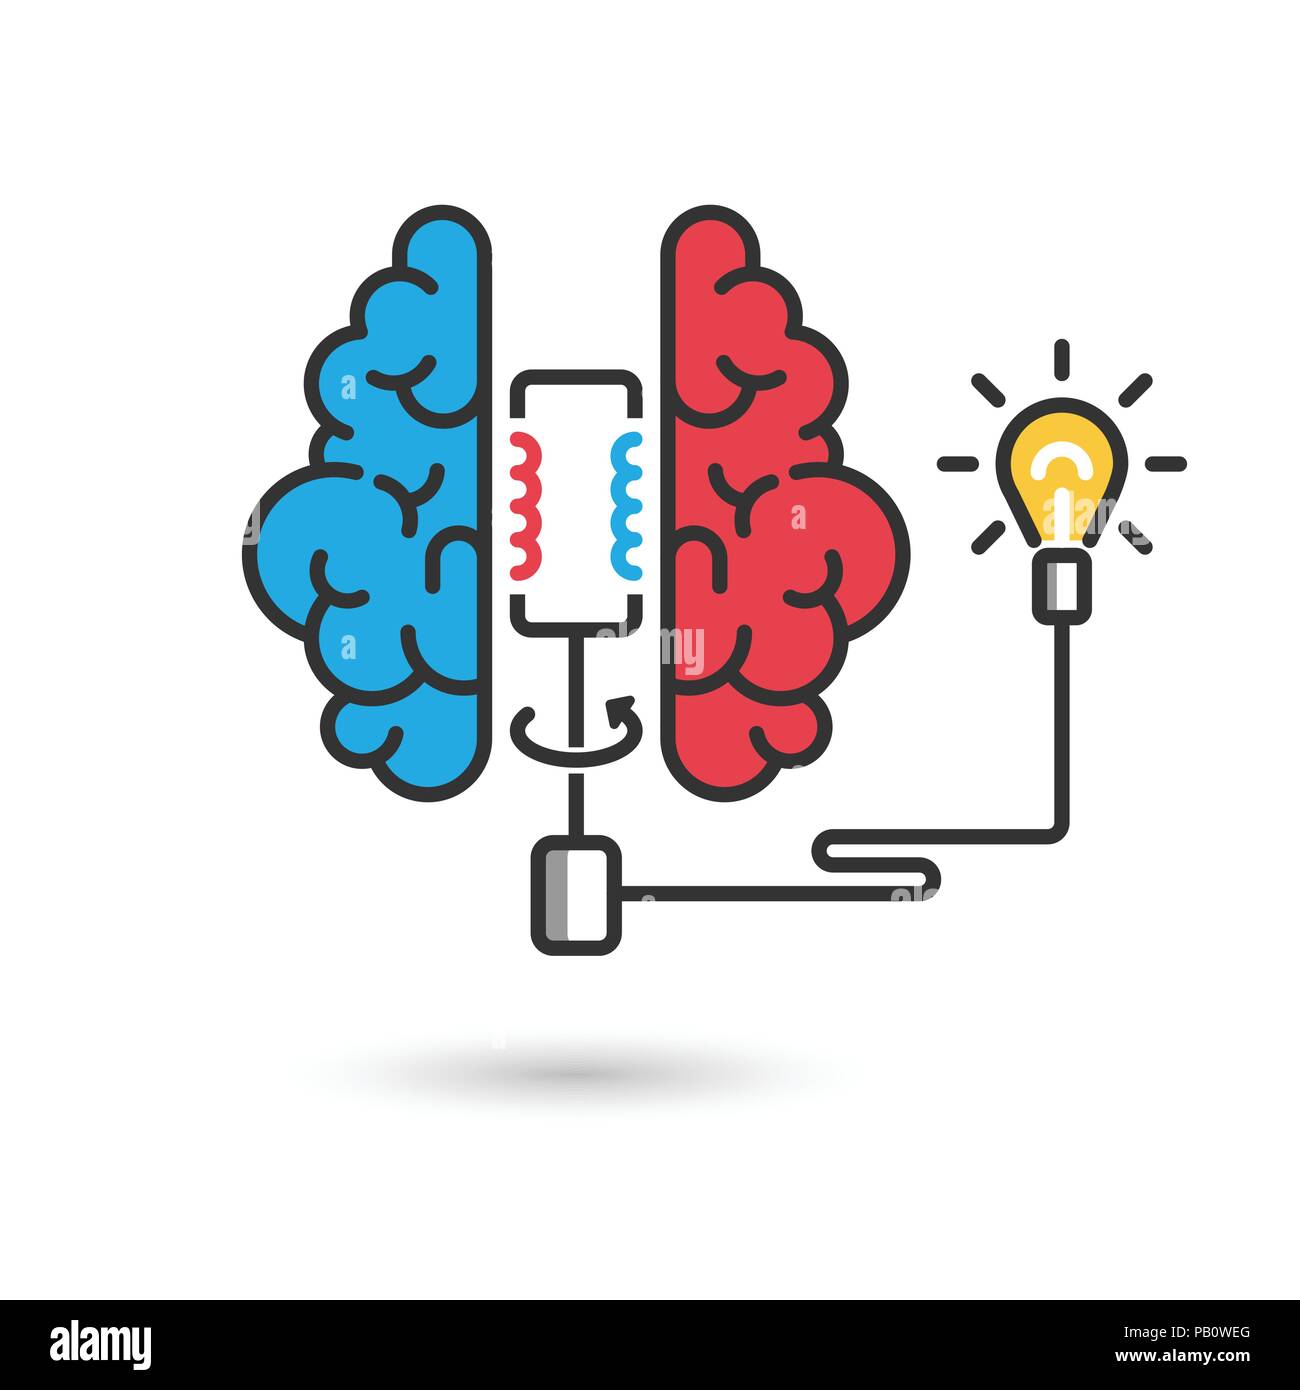 Kreative Gehirn Symbol Konzept für business Abbildung. Gehirn mit elektrischen Generator und Glühlampe. Moderne flache Bauform dünne Linie Banner. Vector EPS 10. Stock Vektor